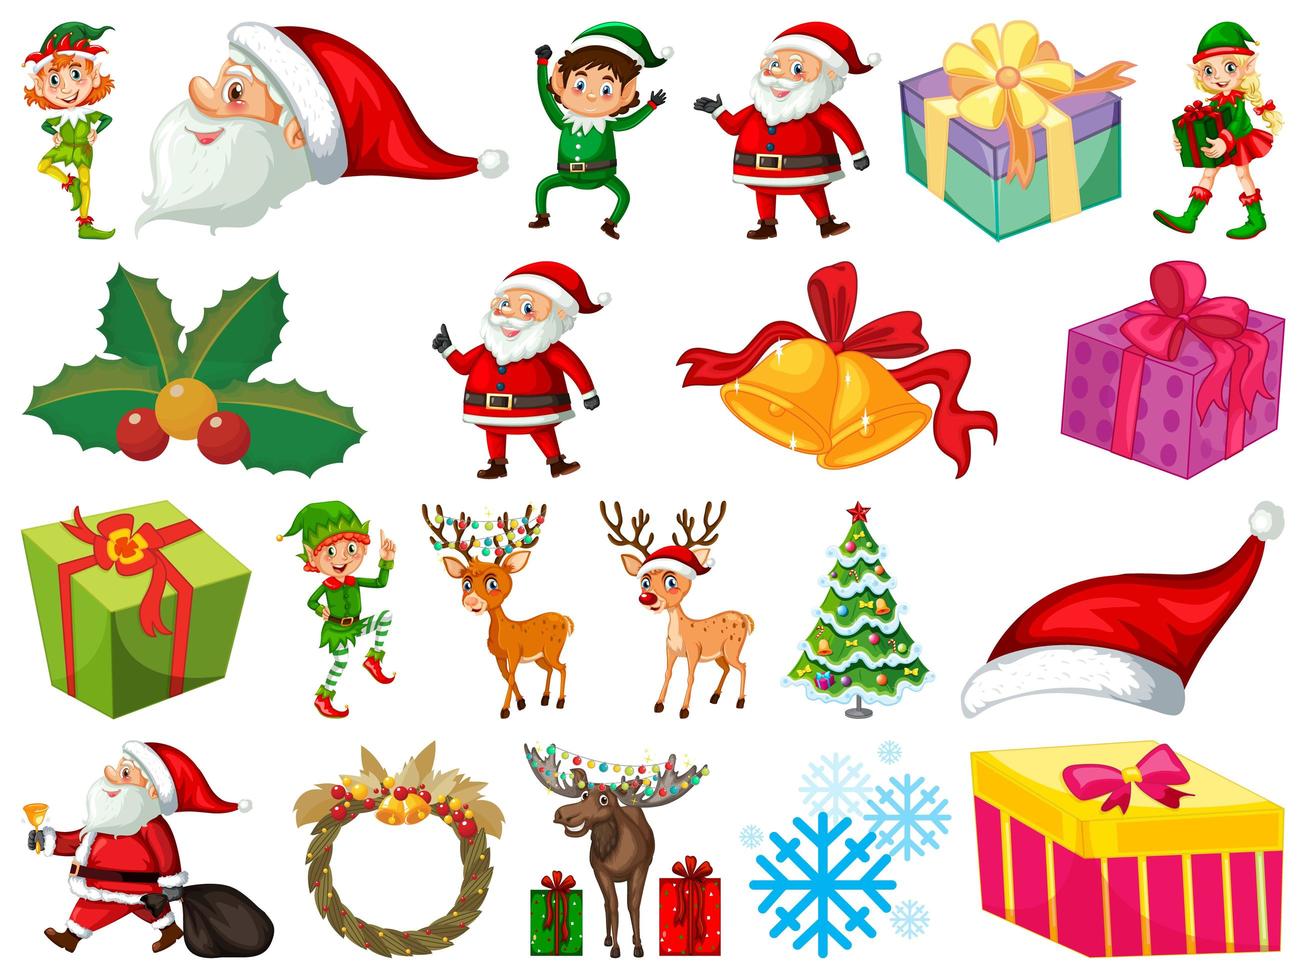 Satz Weihnachtsmann-Zeichentrickfigur und Weihnachtsobjekte lokalisiert auf weißem Hintergrund vektor